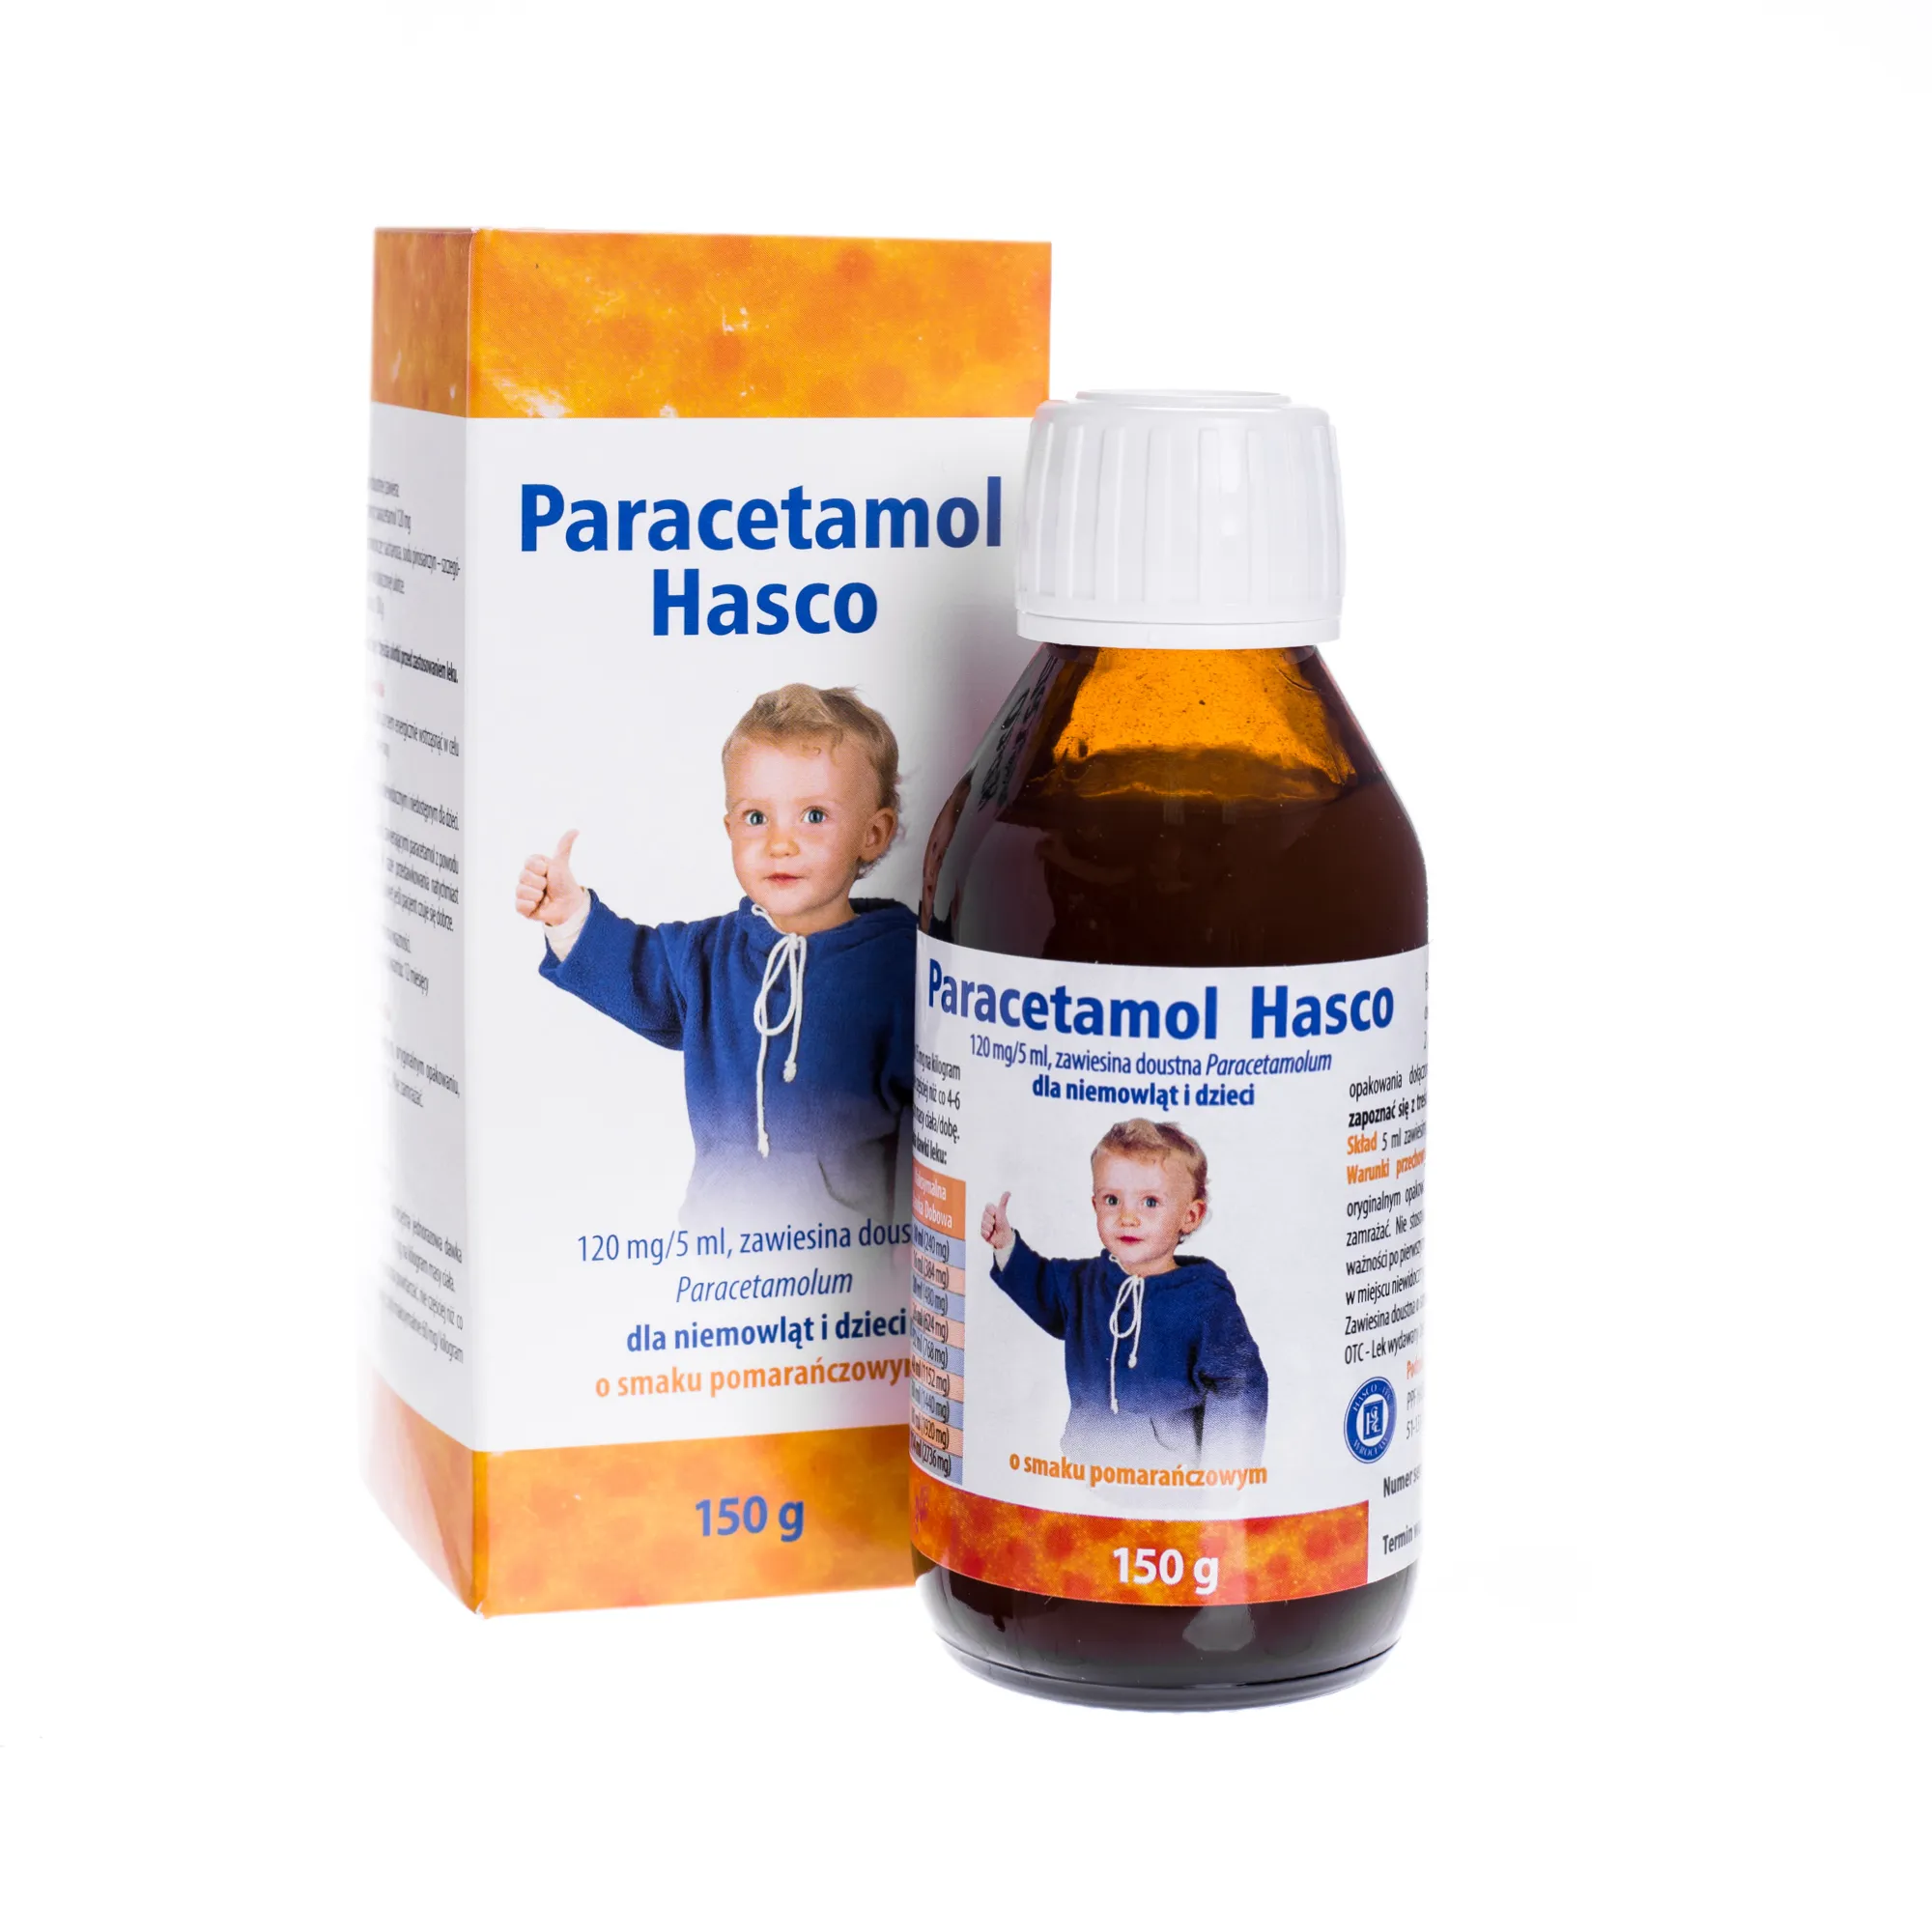 Paracetamol Hasco, 120mg/5ml, zawiesina doustna, smak pomarańczowy, 150 g 